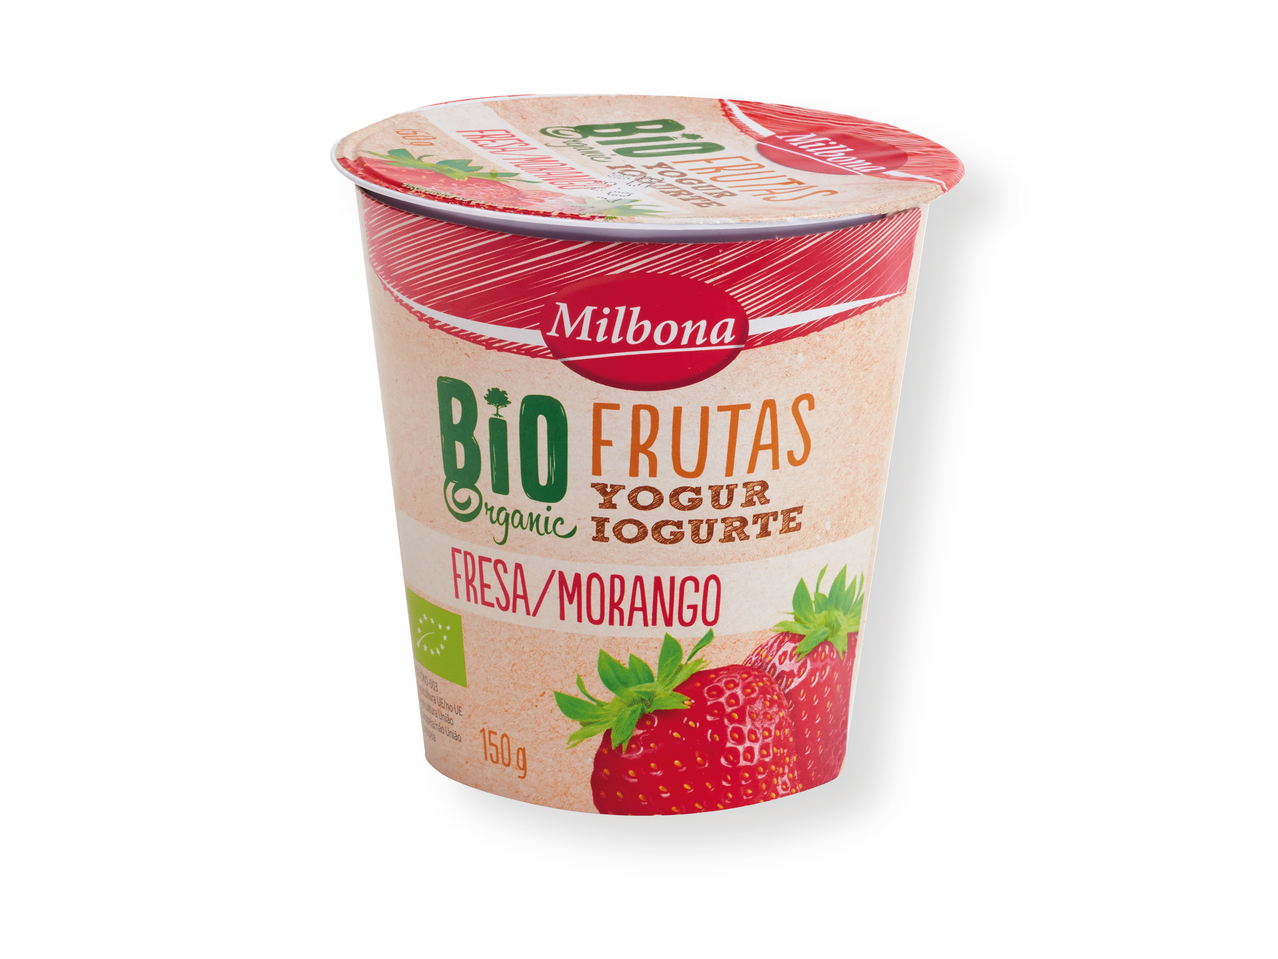 'Milbona(R)' Yogur ecológico de fruta